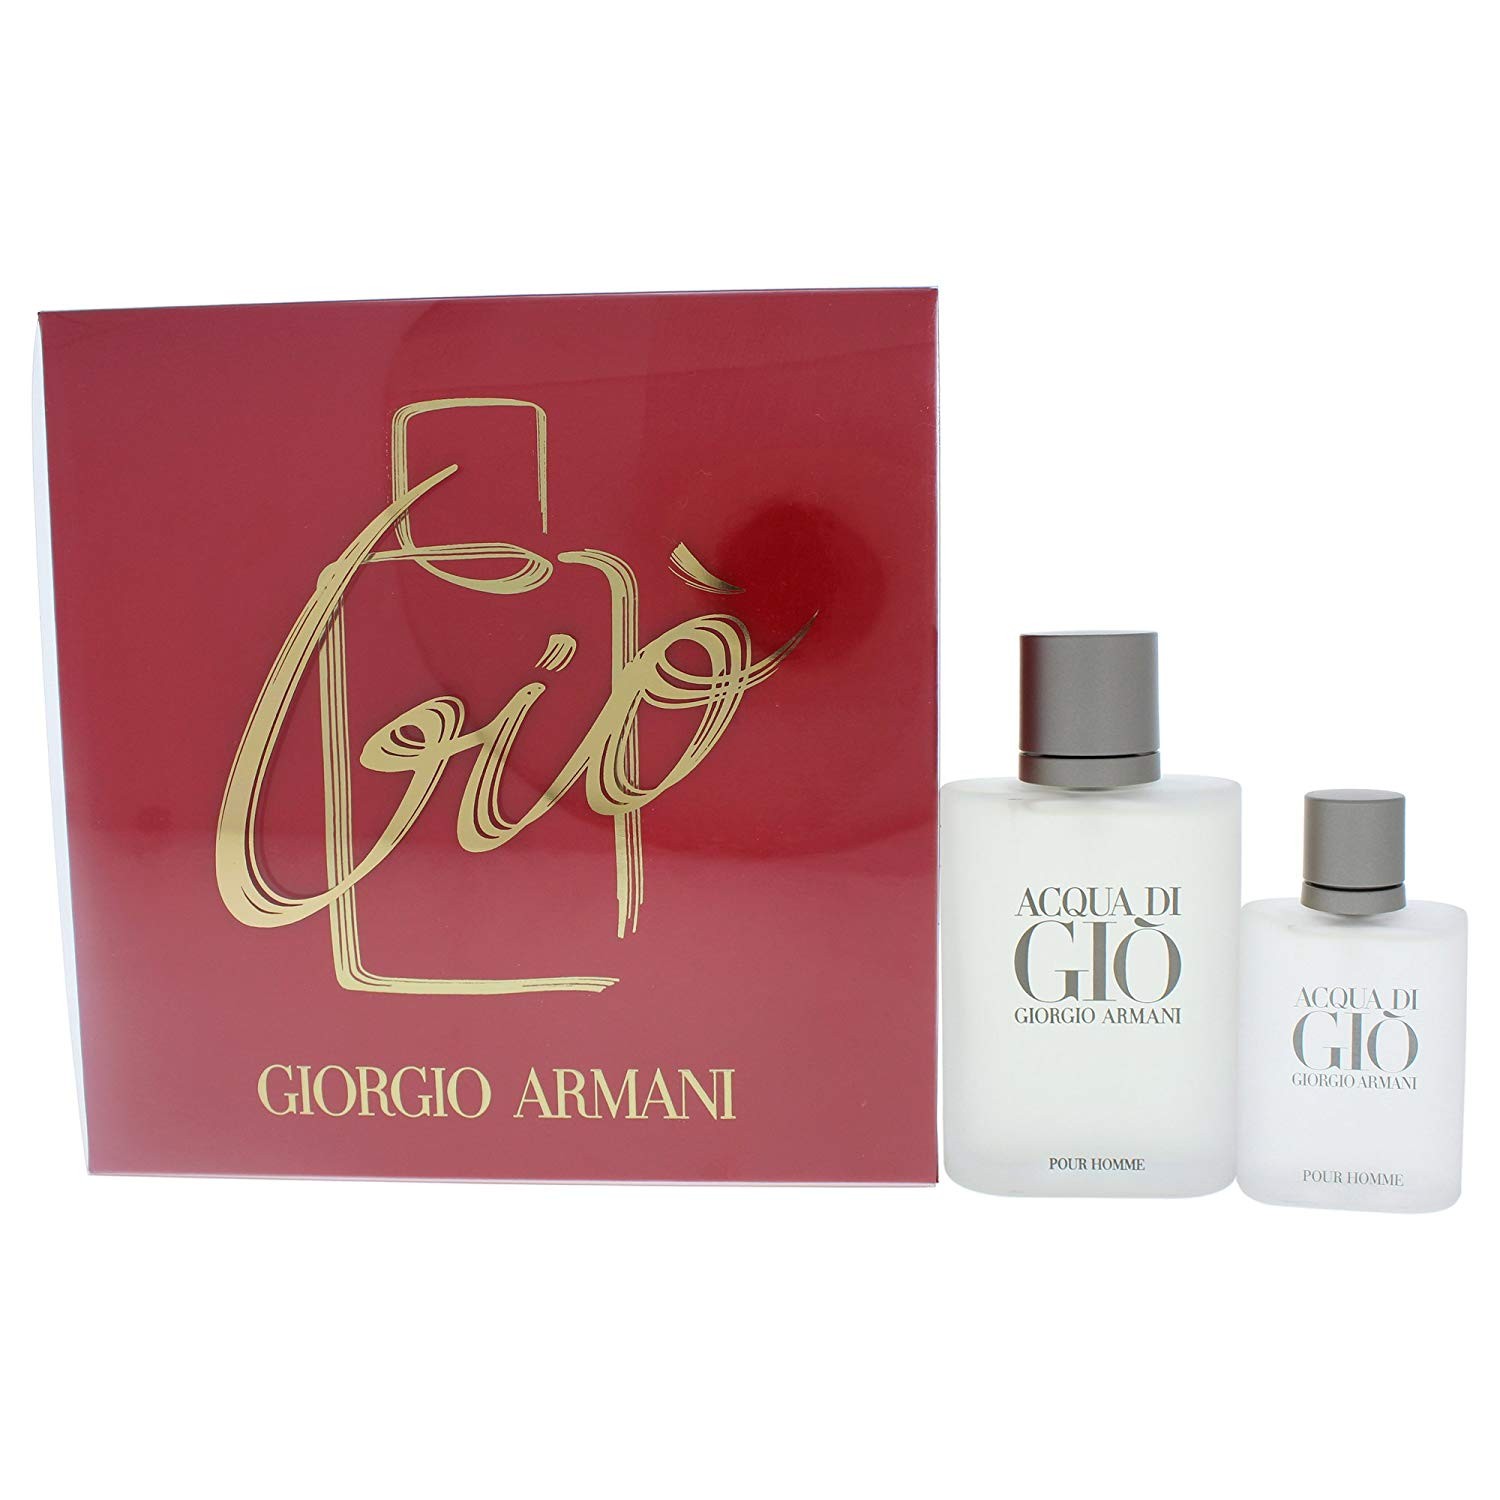 giorgio armani gift box